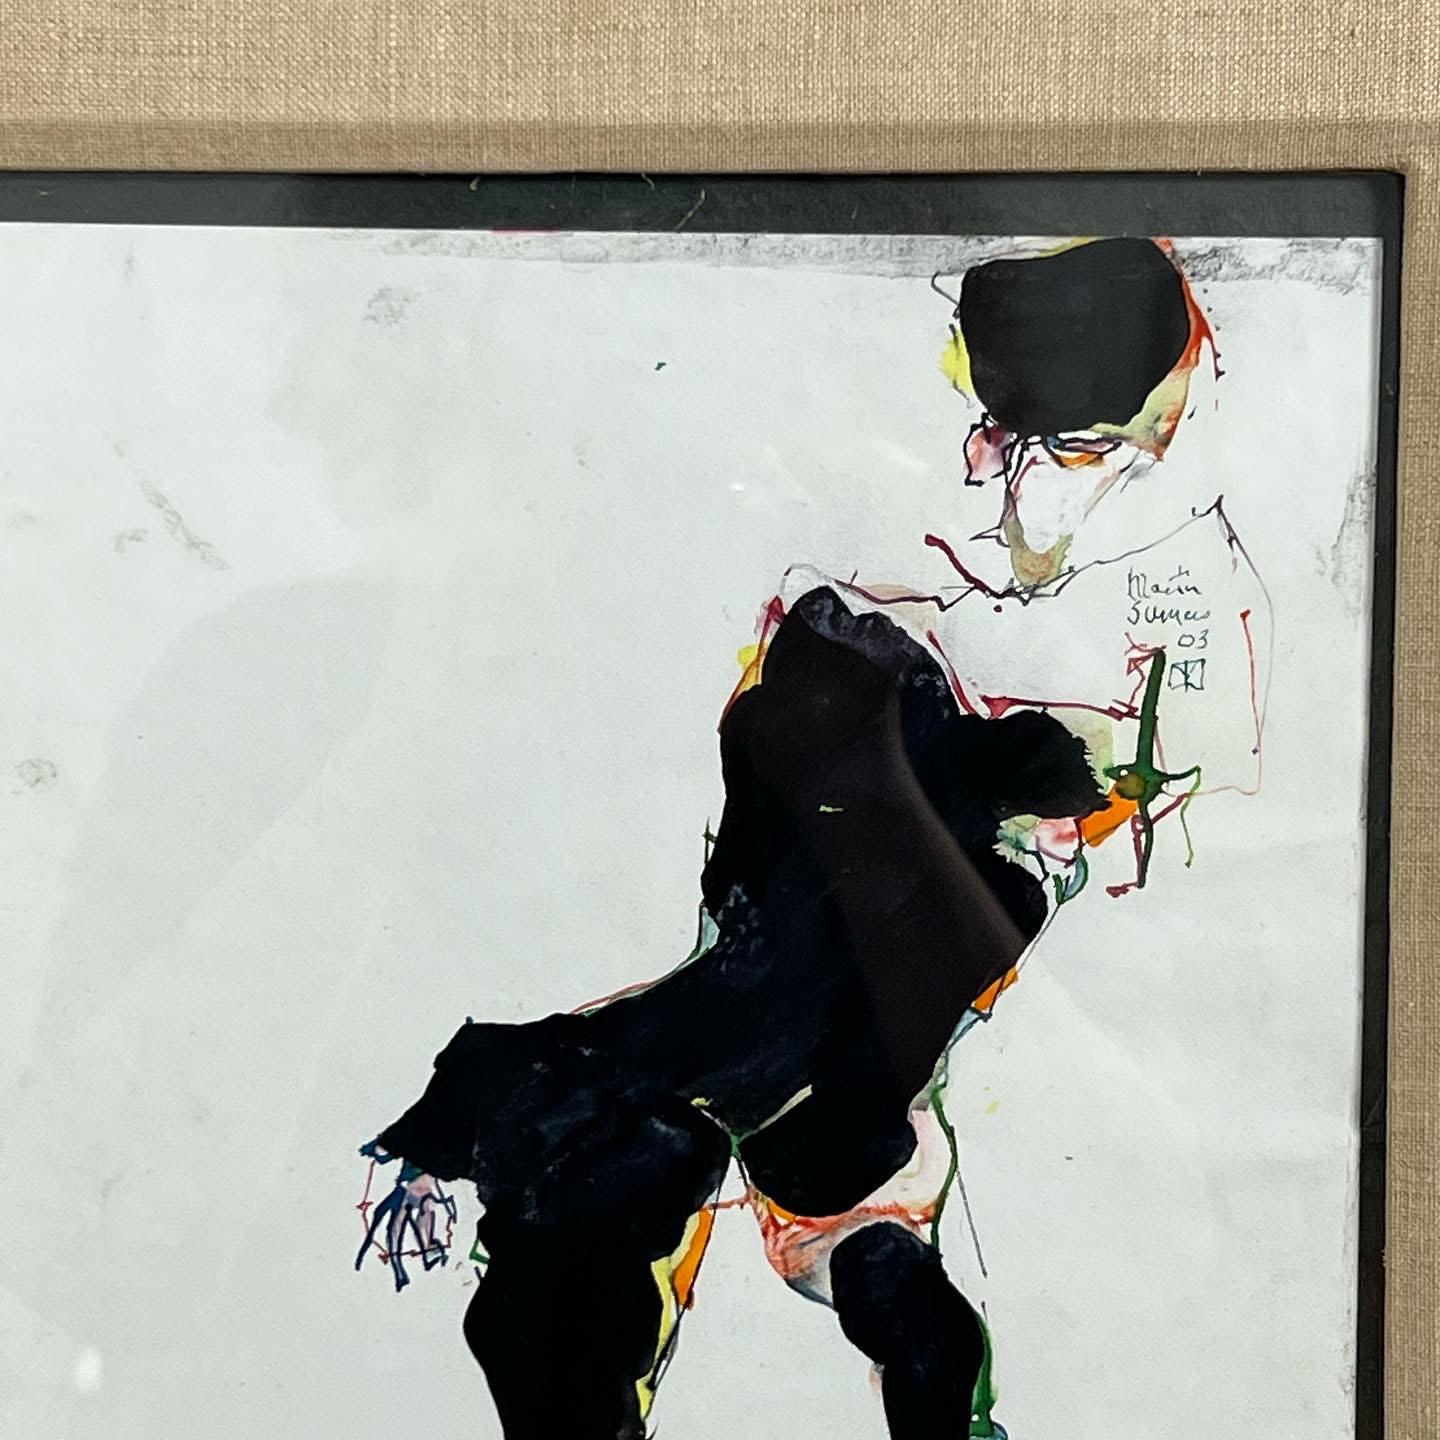 Abstrakte Figur in Aquarell und Tusche, von dem bekannten Expressionisten Martin Sumers, gest. 2003. Wie sein Zeitgenosse Willem de Kooning fand Sumers seine Hauptinspiration in einer stilisierten und übertriebenen Darstellung der weiblichen Form.